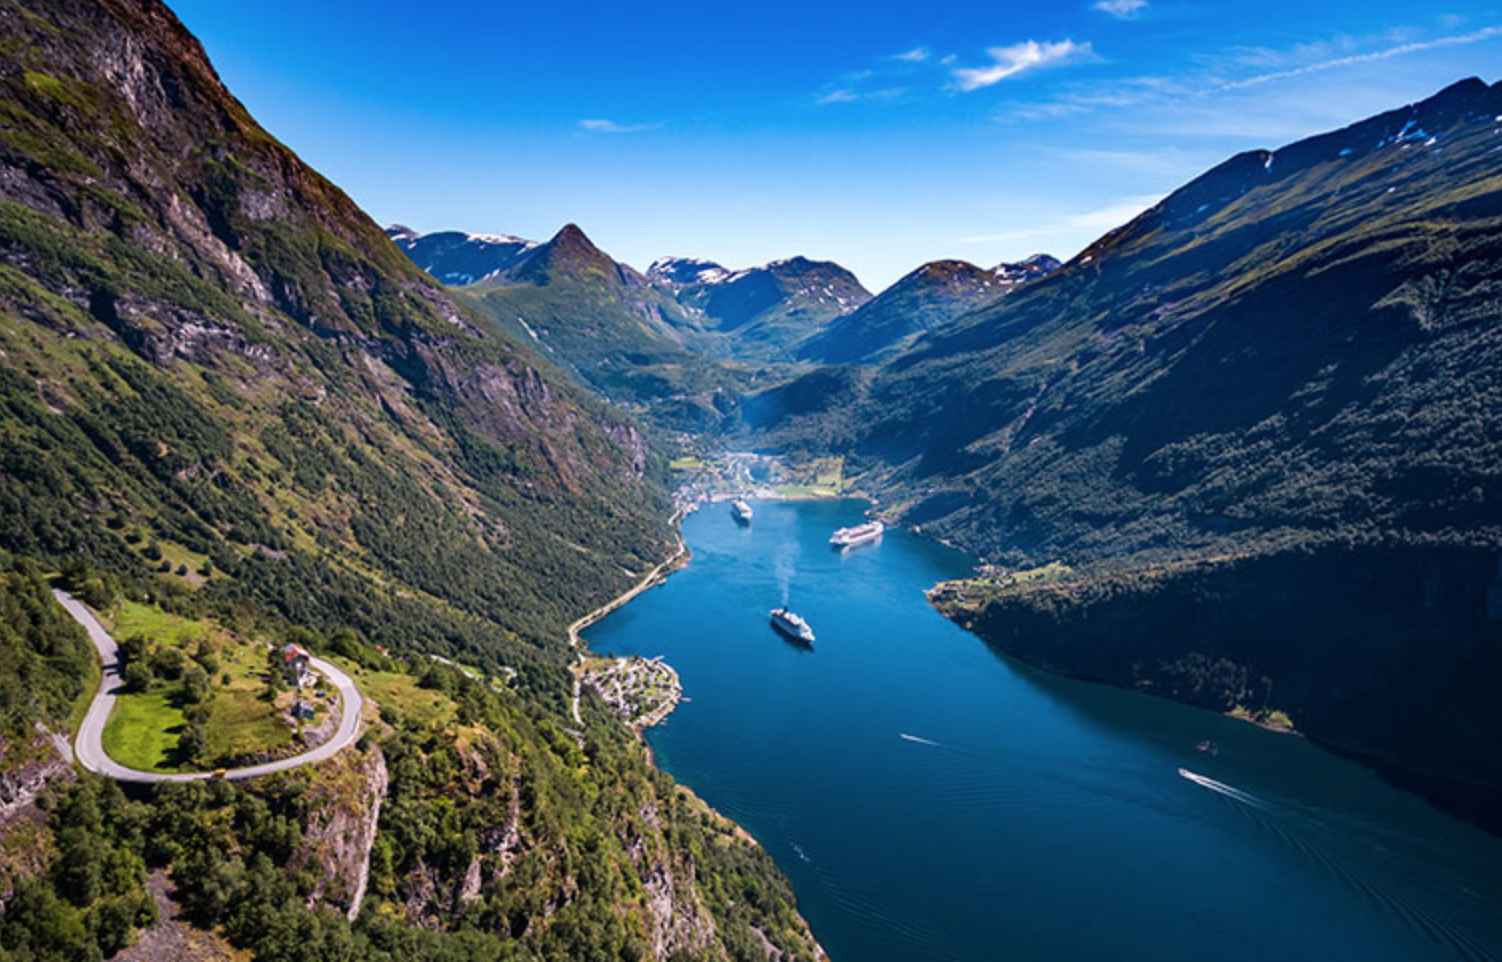  Découvrez la beauté des fjords norvégiens</